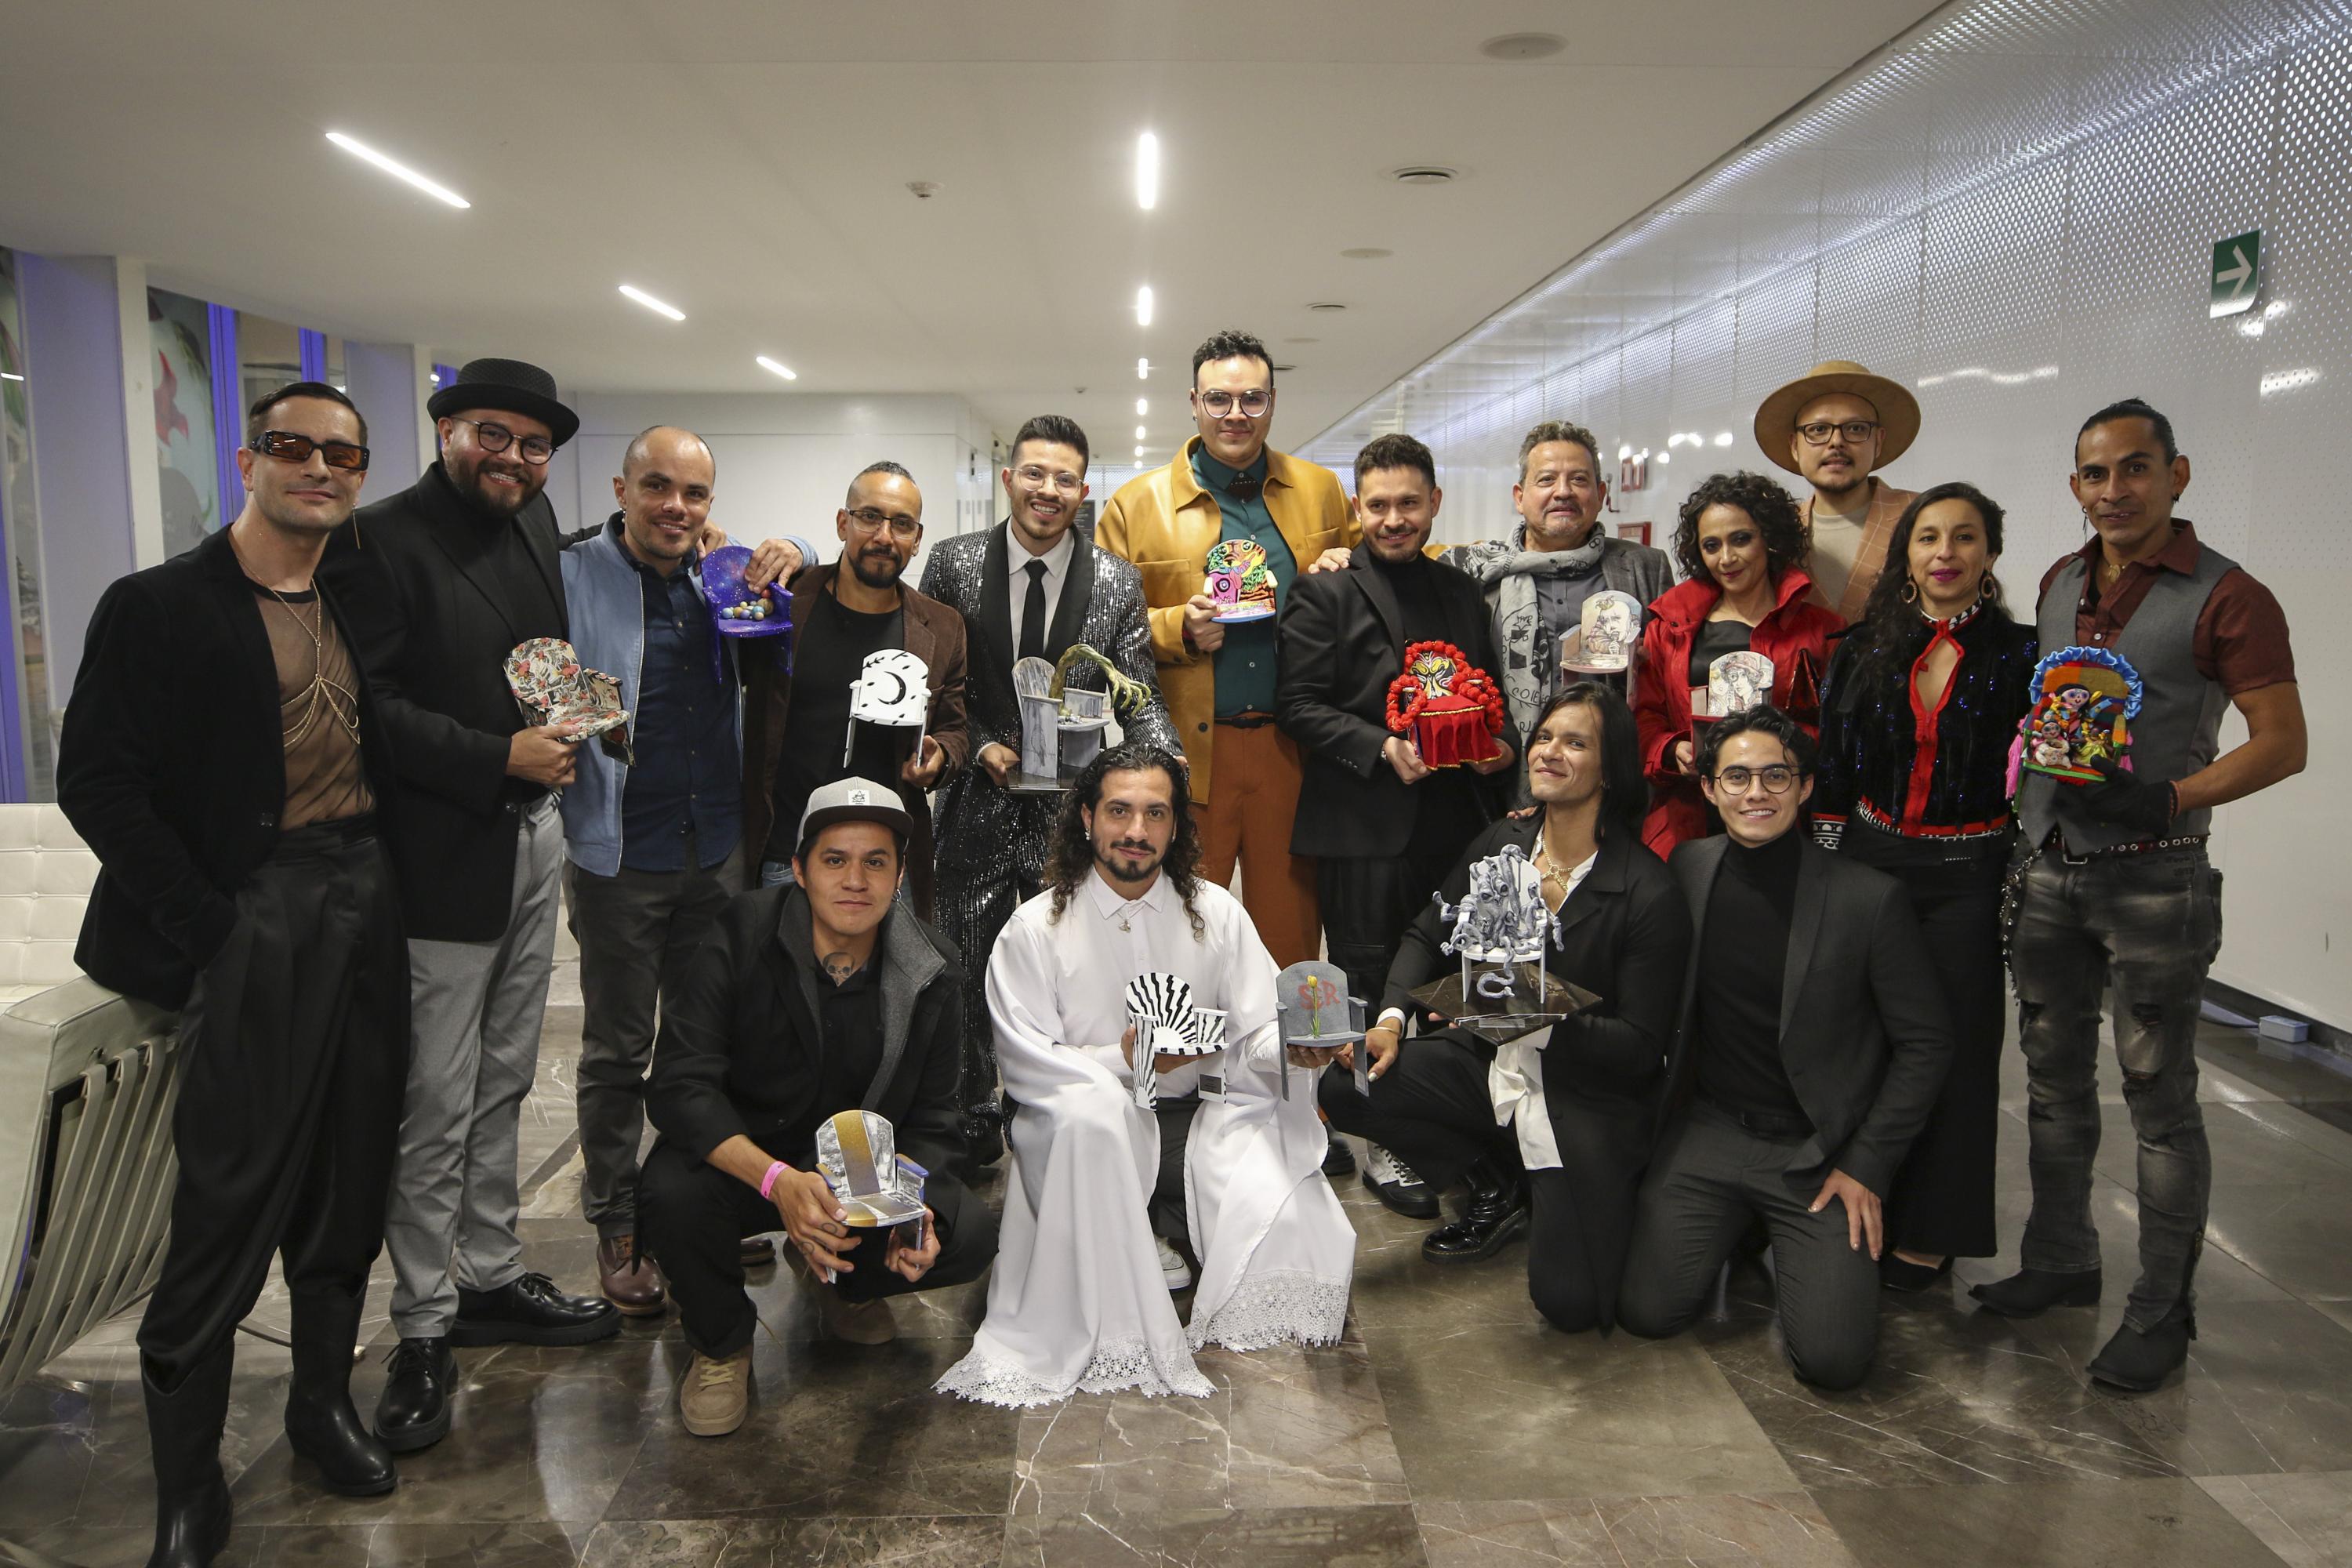 La obra galardonada como Mejor puesta en escena fue “Perfiles Ideales - El musical”, producida por Alonso López